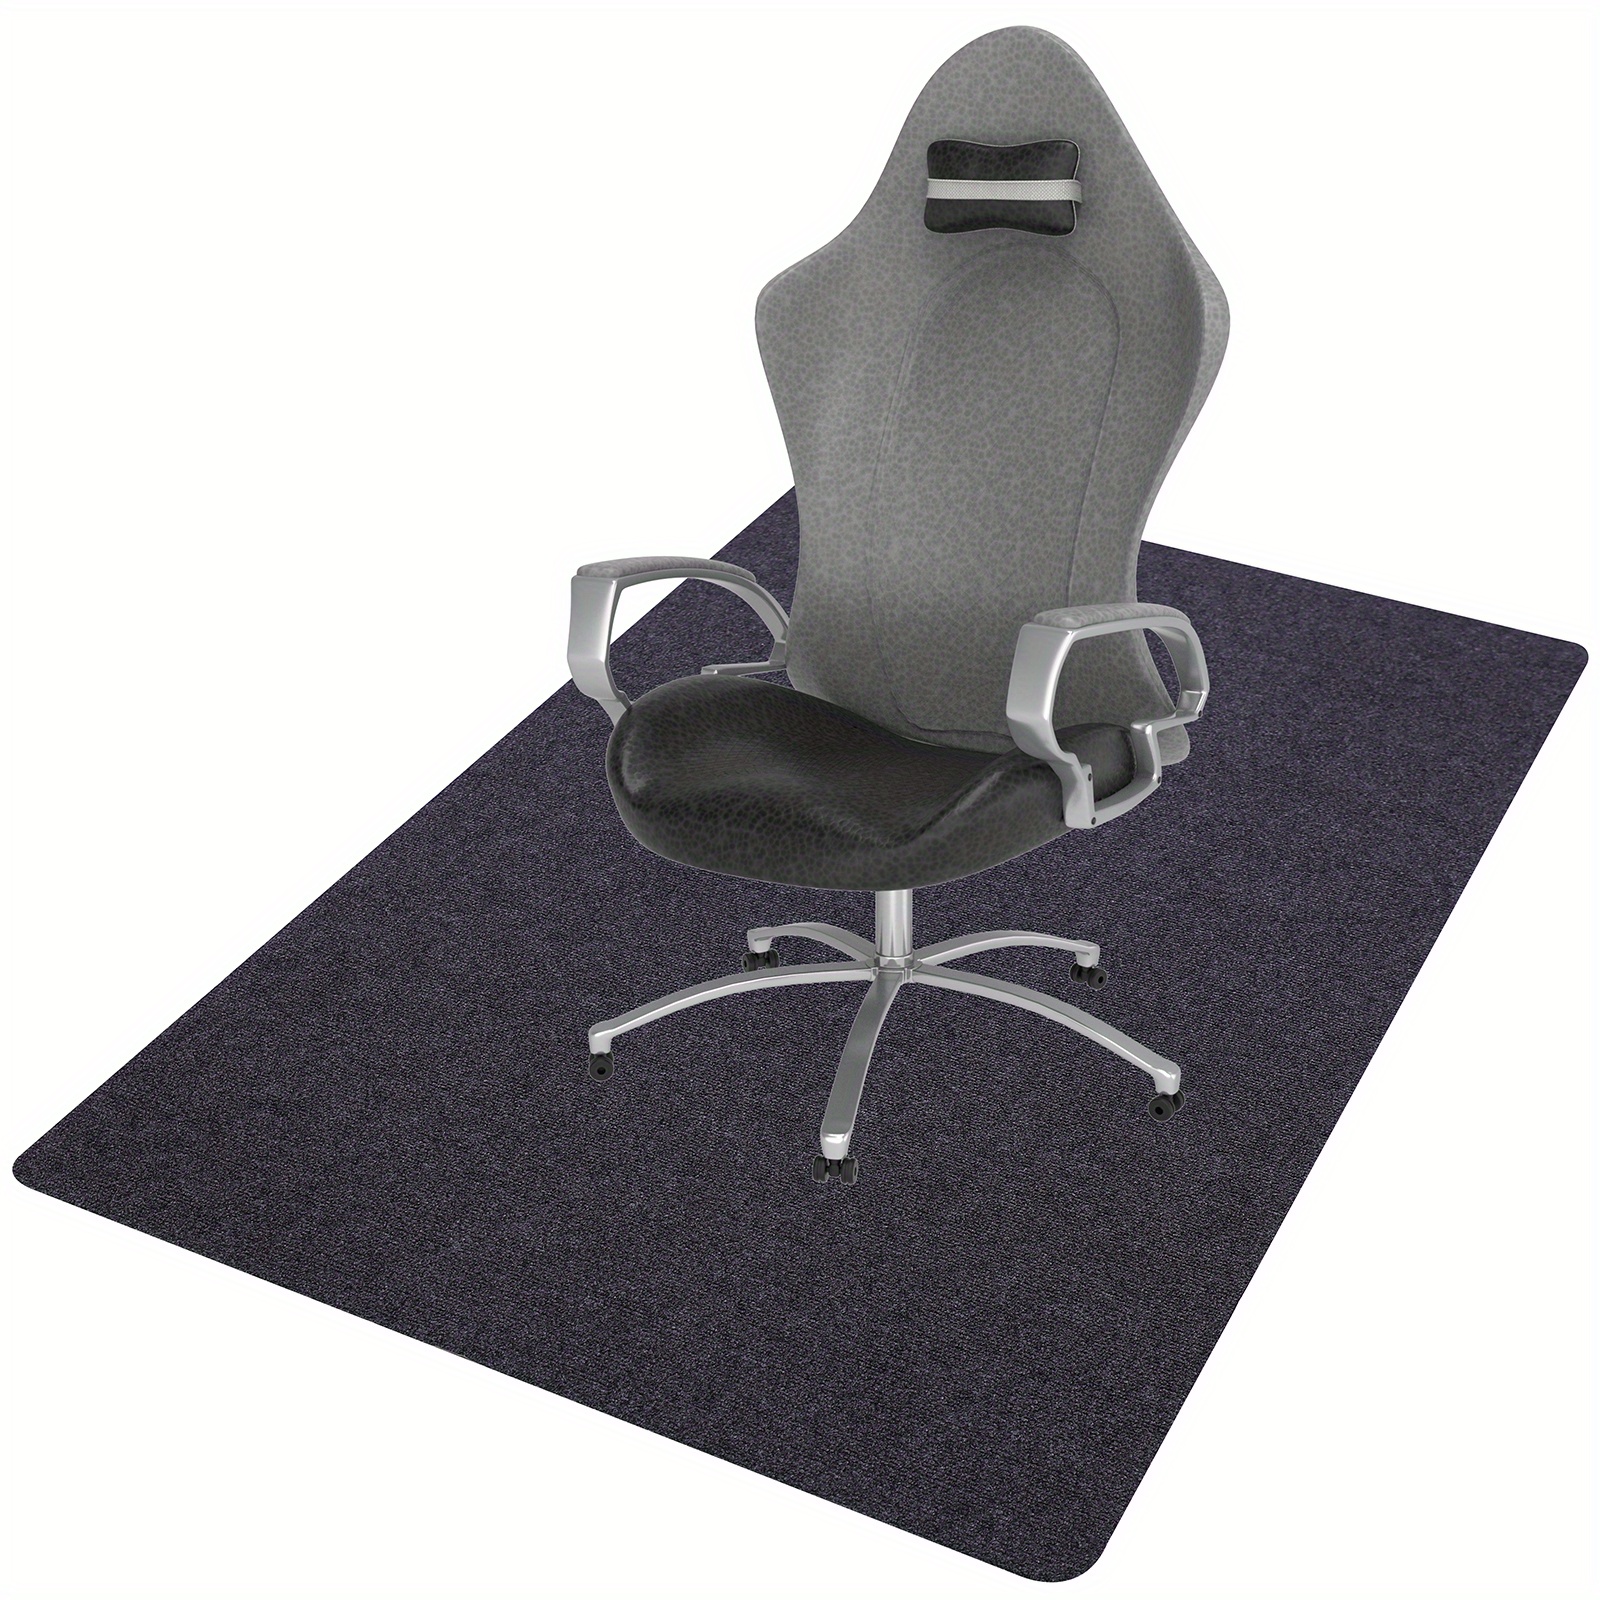 Interlocking Chair Mats are Customizable Chair Mat Tiles